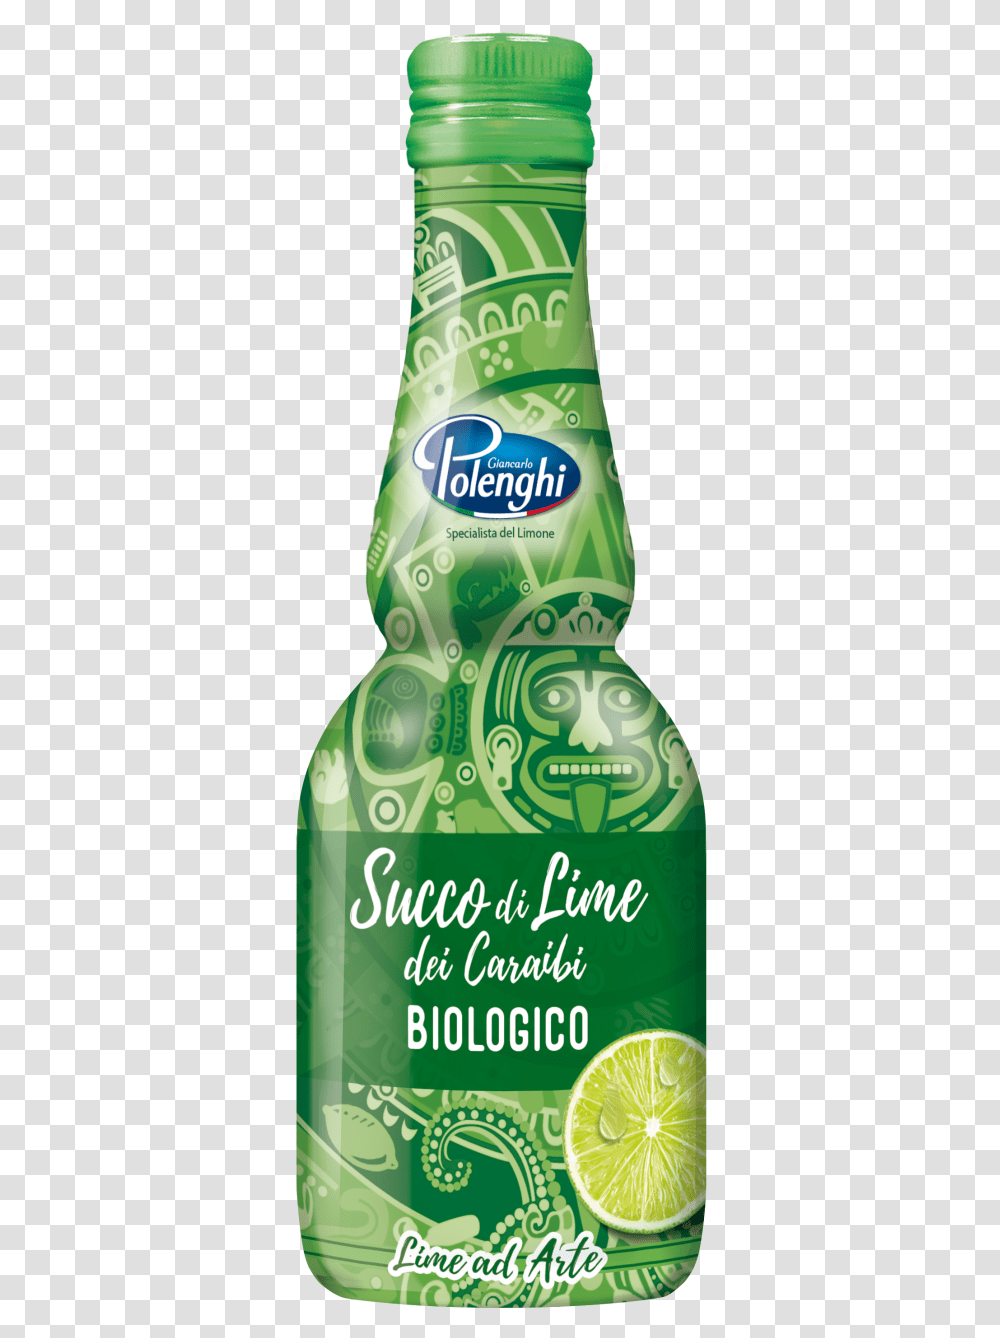 Caraffina Organic Caribbean Lime Juice Glass Bottle, Beverage, Drink, Beer, Alcohol Transparent Png